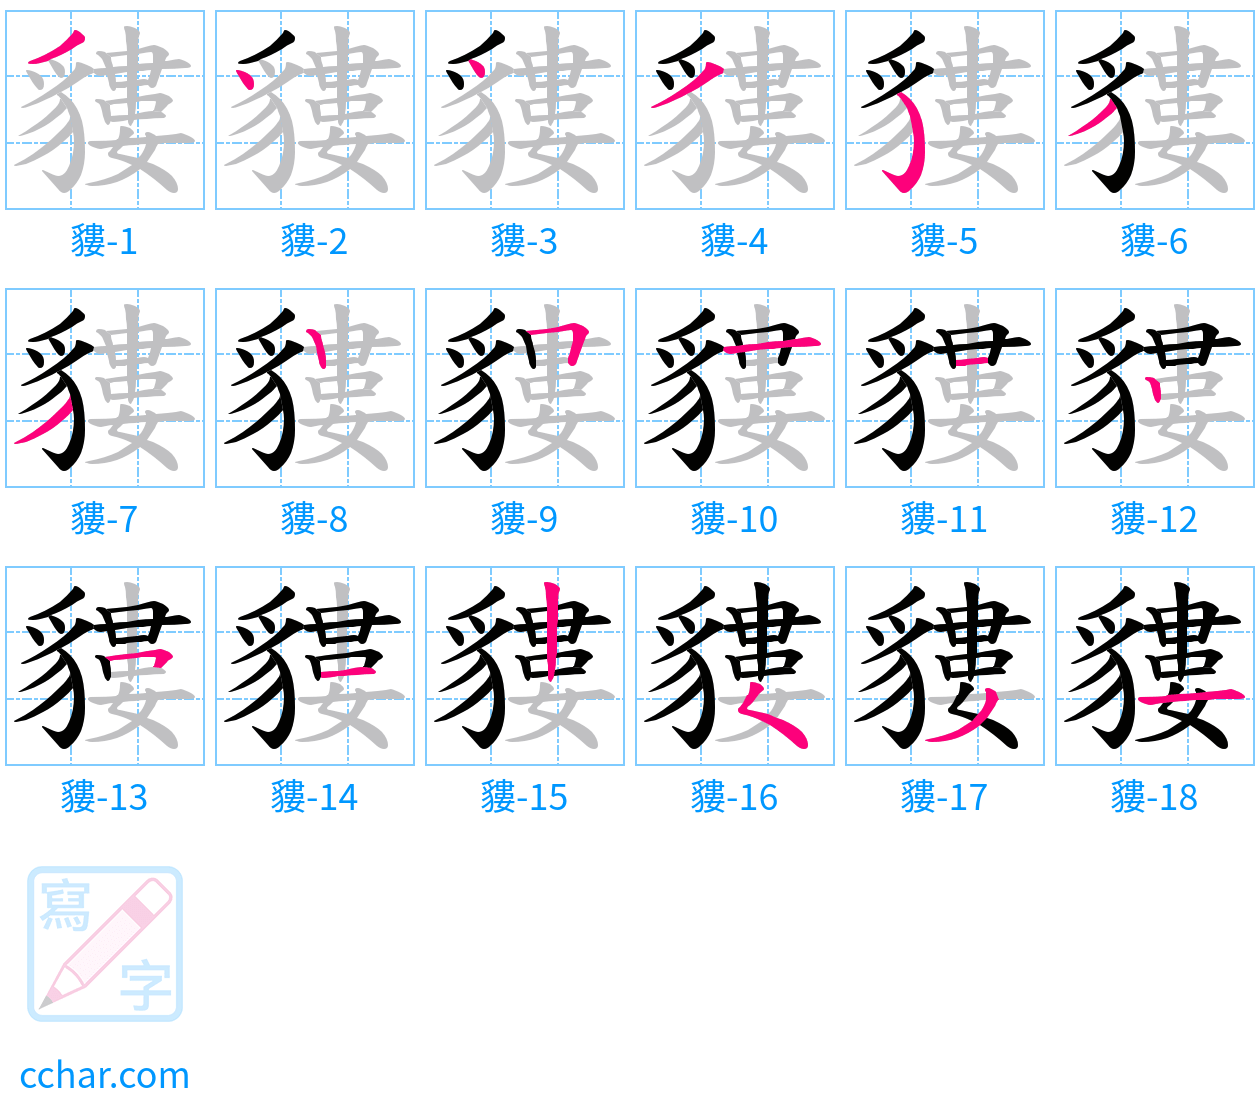 貗 stroke order step-by-step diagram